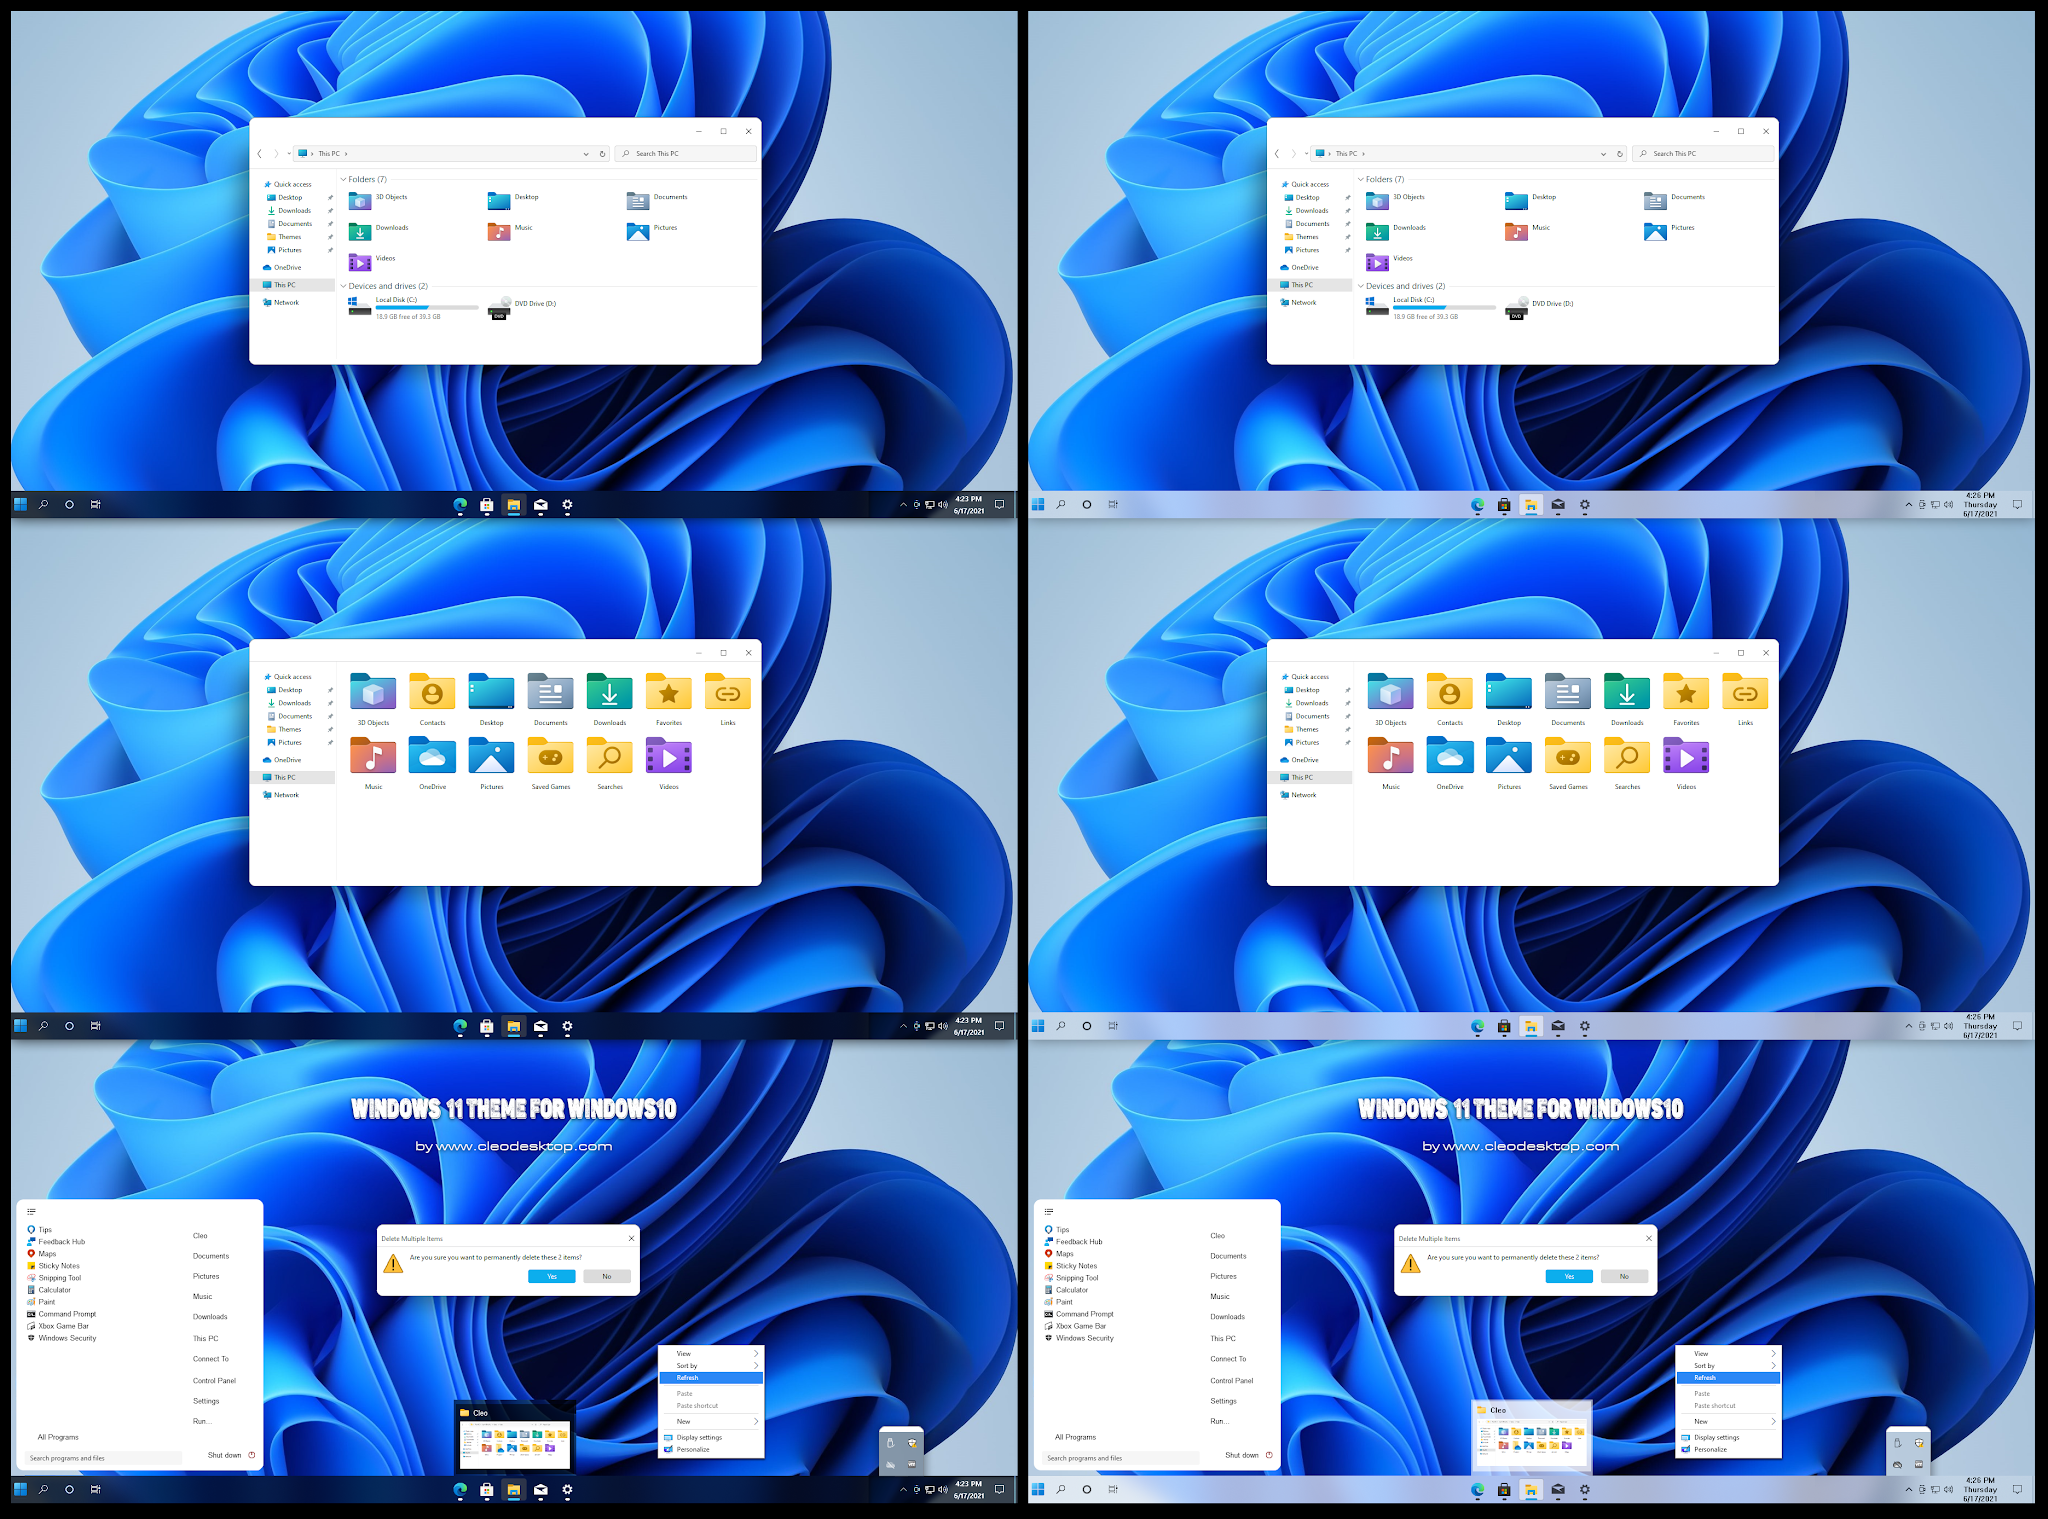 Windows 11 Theme For Windows 10 Cleodesktop I Windows 10 Themes